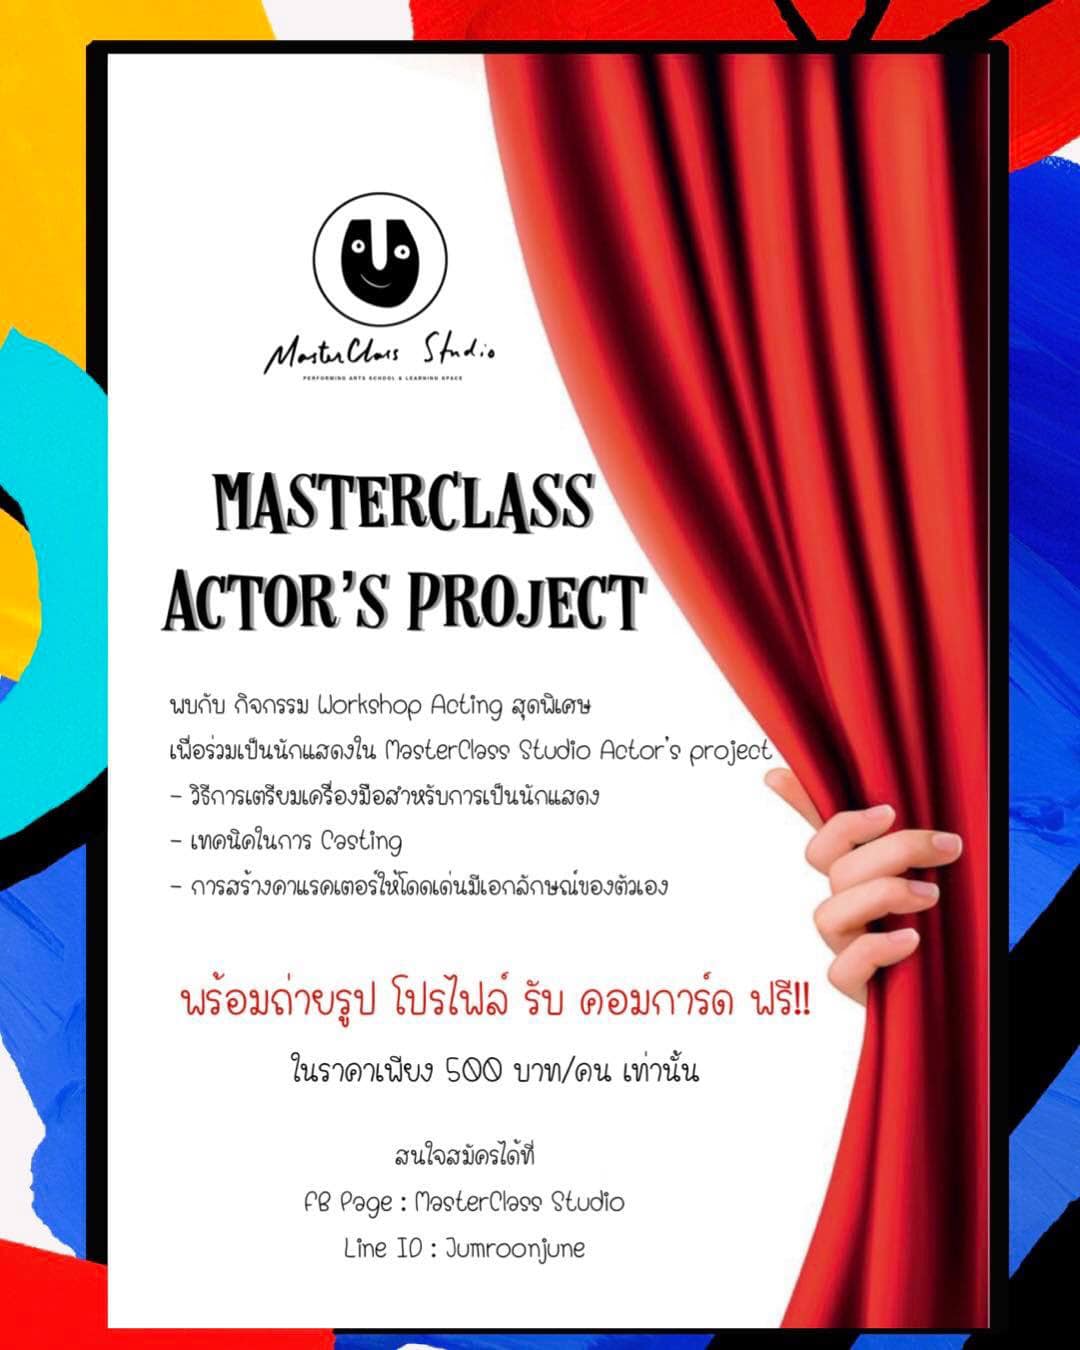 เหลืออีก 2 วันเท่านั้น สำหรับกิจกรรม Workshop ของเรา และถ่ายรูปโปรไฟล์ รับคอมการ์ด ฟรี 
กับ MasterClass Studio Actor’s P…